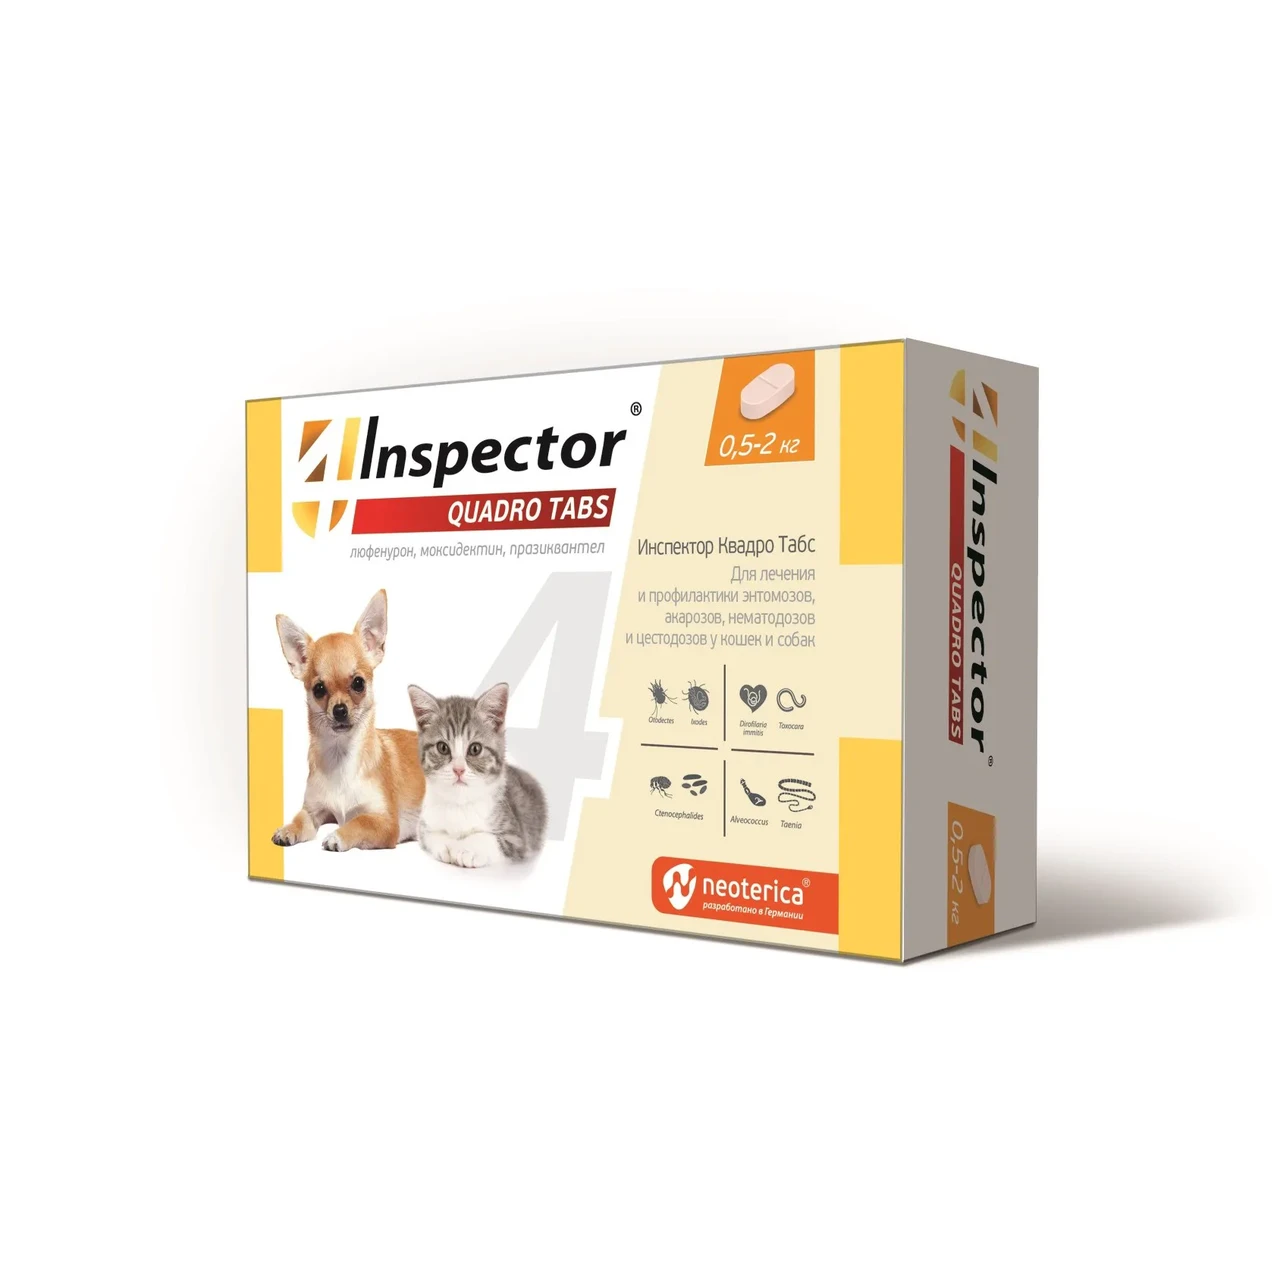 Inspector Quadro Tabs таблетки от паразитов для кошек и собак 0,5 - 2 кг